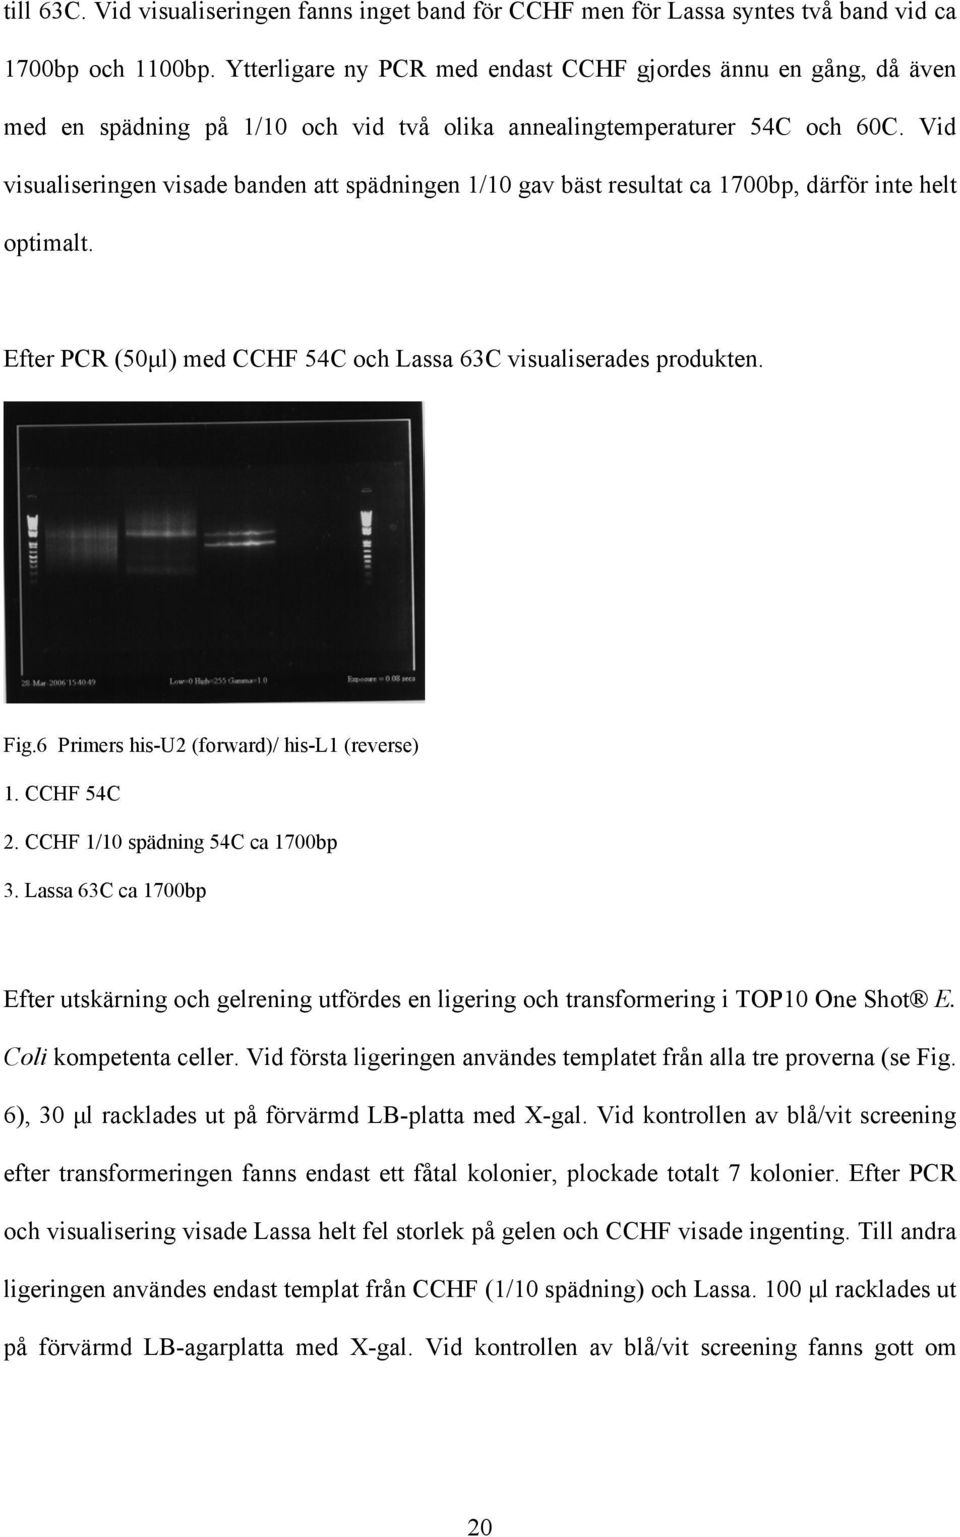 Vid visualiseringen visade banden att spädningen 1/10 gav bäst resultat ca 1700bp, därför inte helt optimalt. Efter PCR (50µl) med CCHF 54C och Lassa 63C visualiserades produkten. Fig.